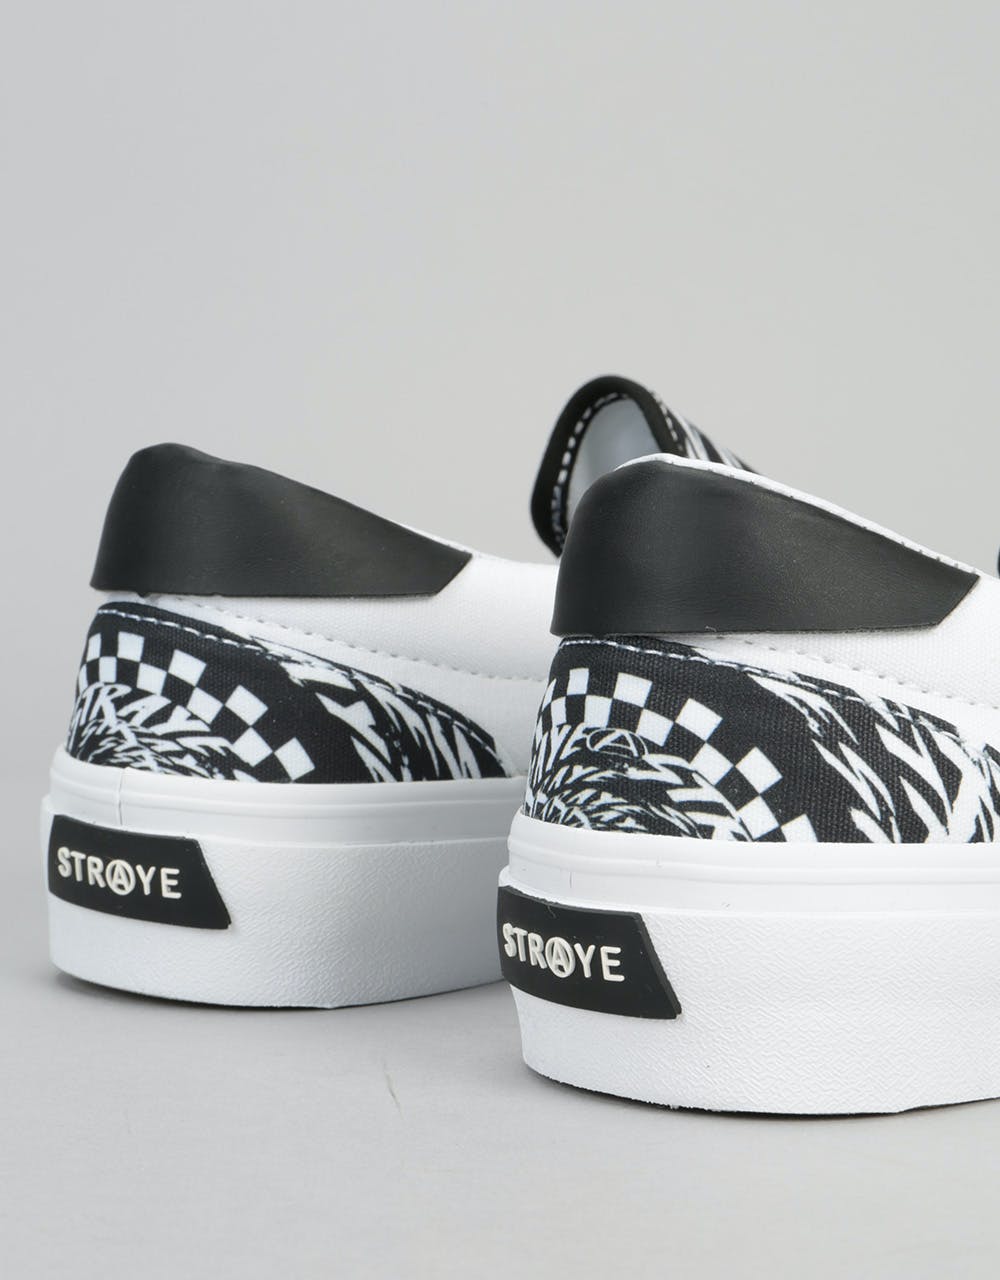 Straye Ventura Skate Shoes - BW Vortex